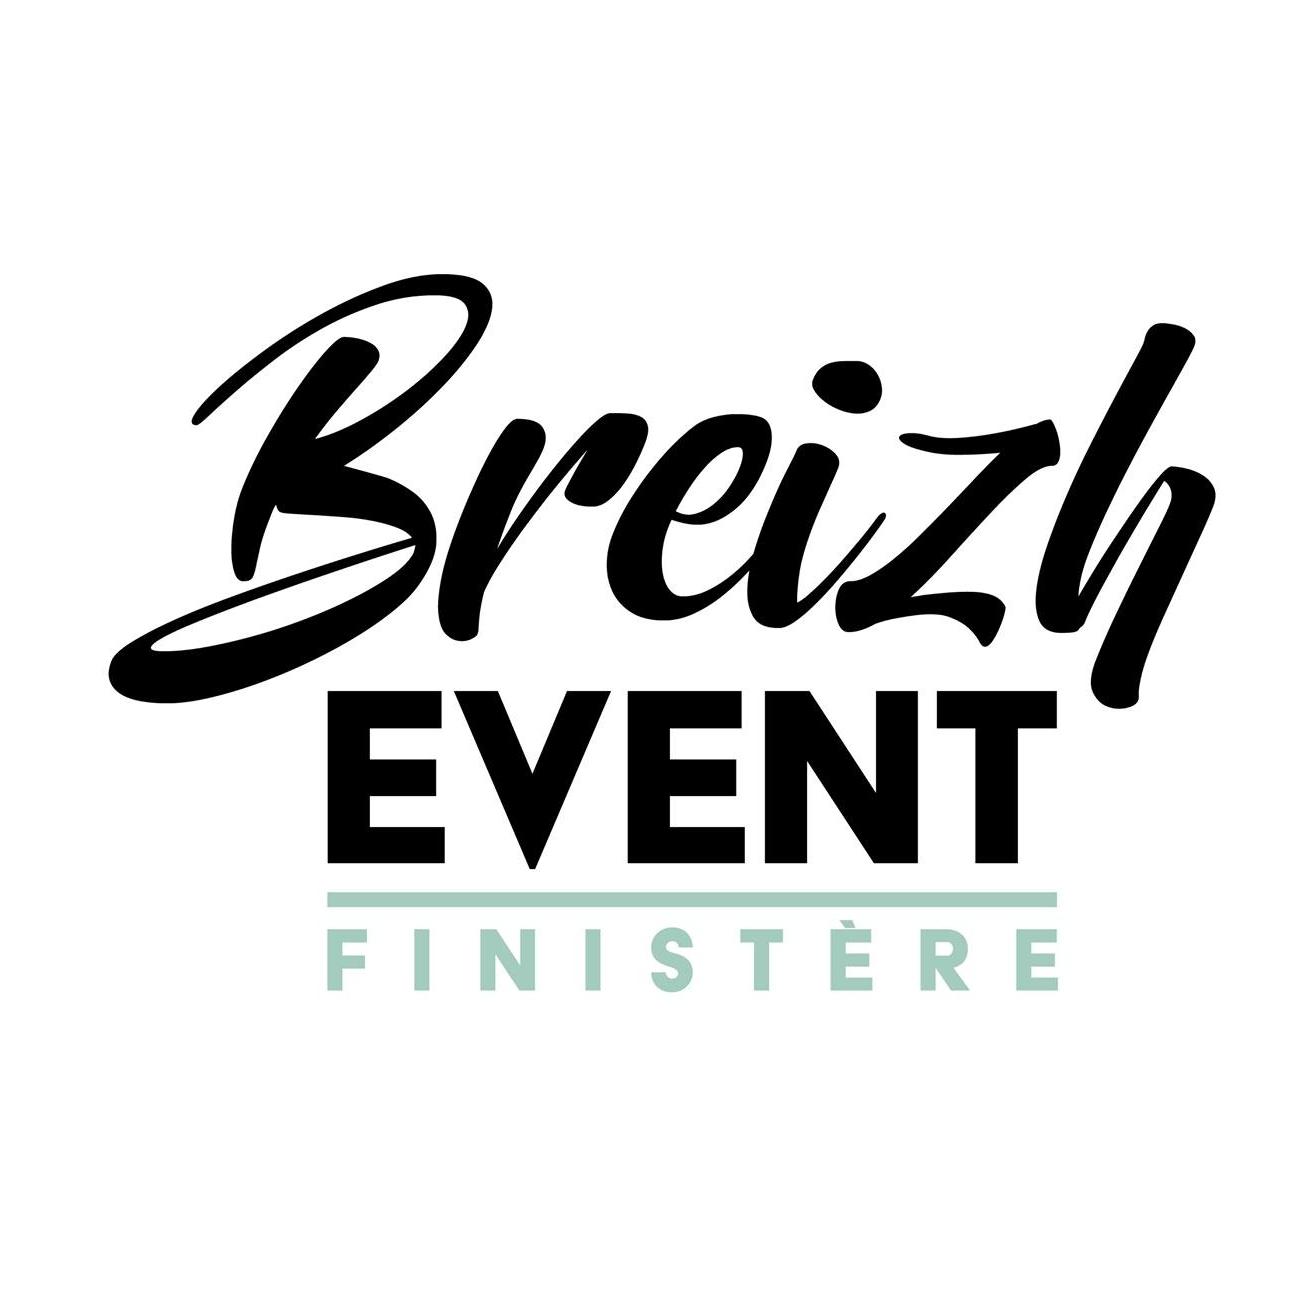 Breizh event